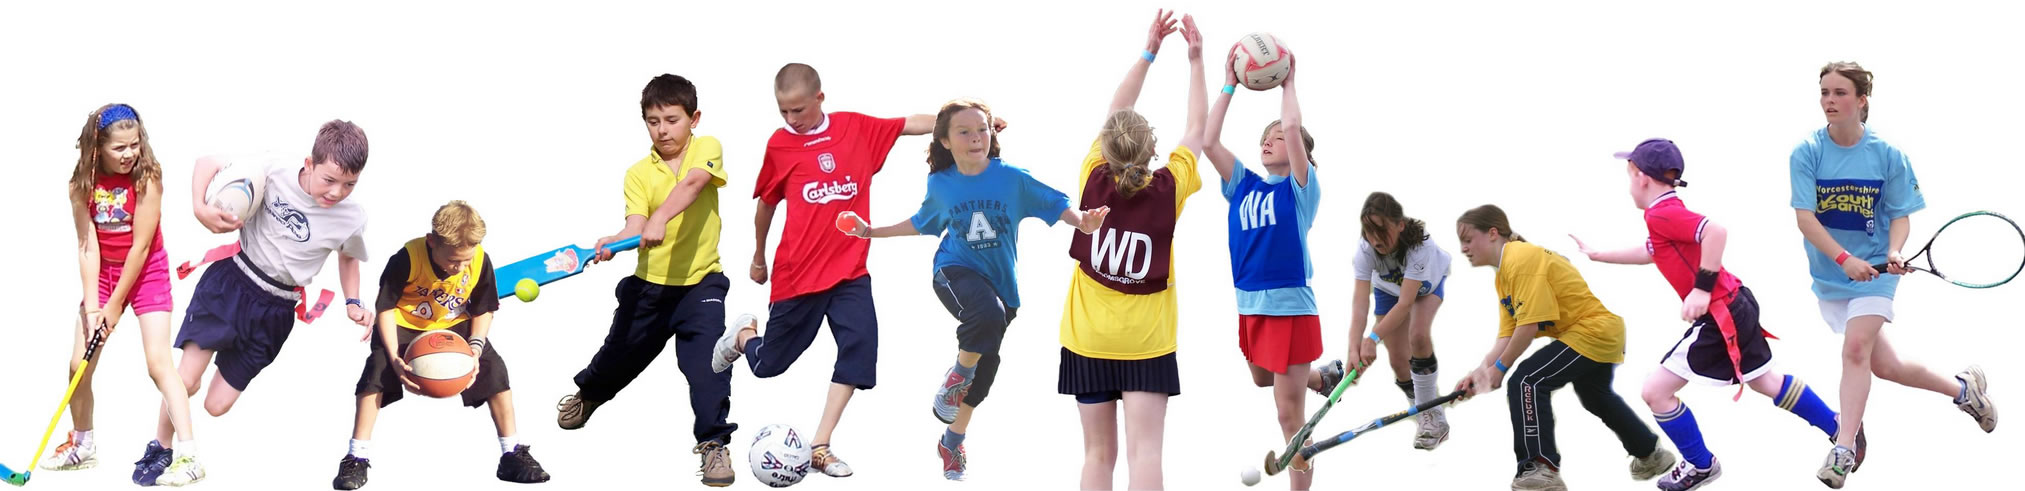 Выбор вида спорта для ребенка